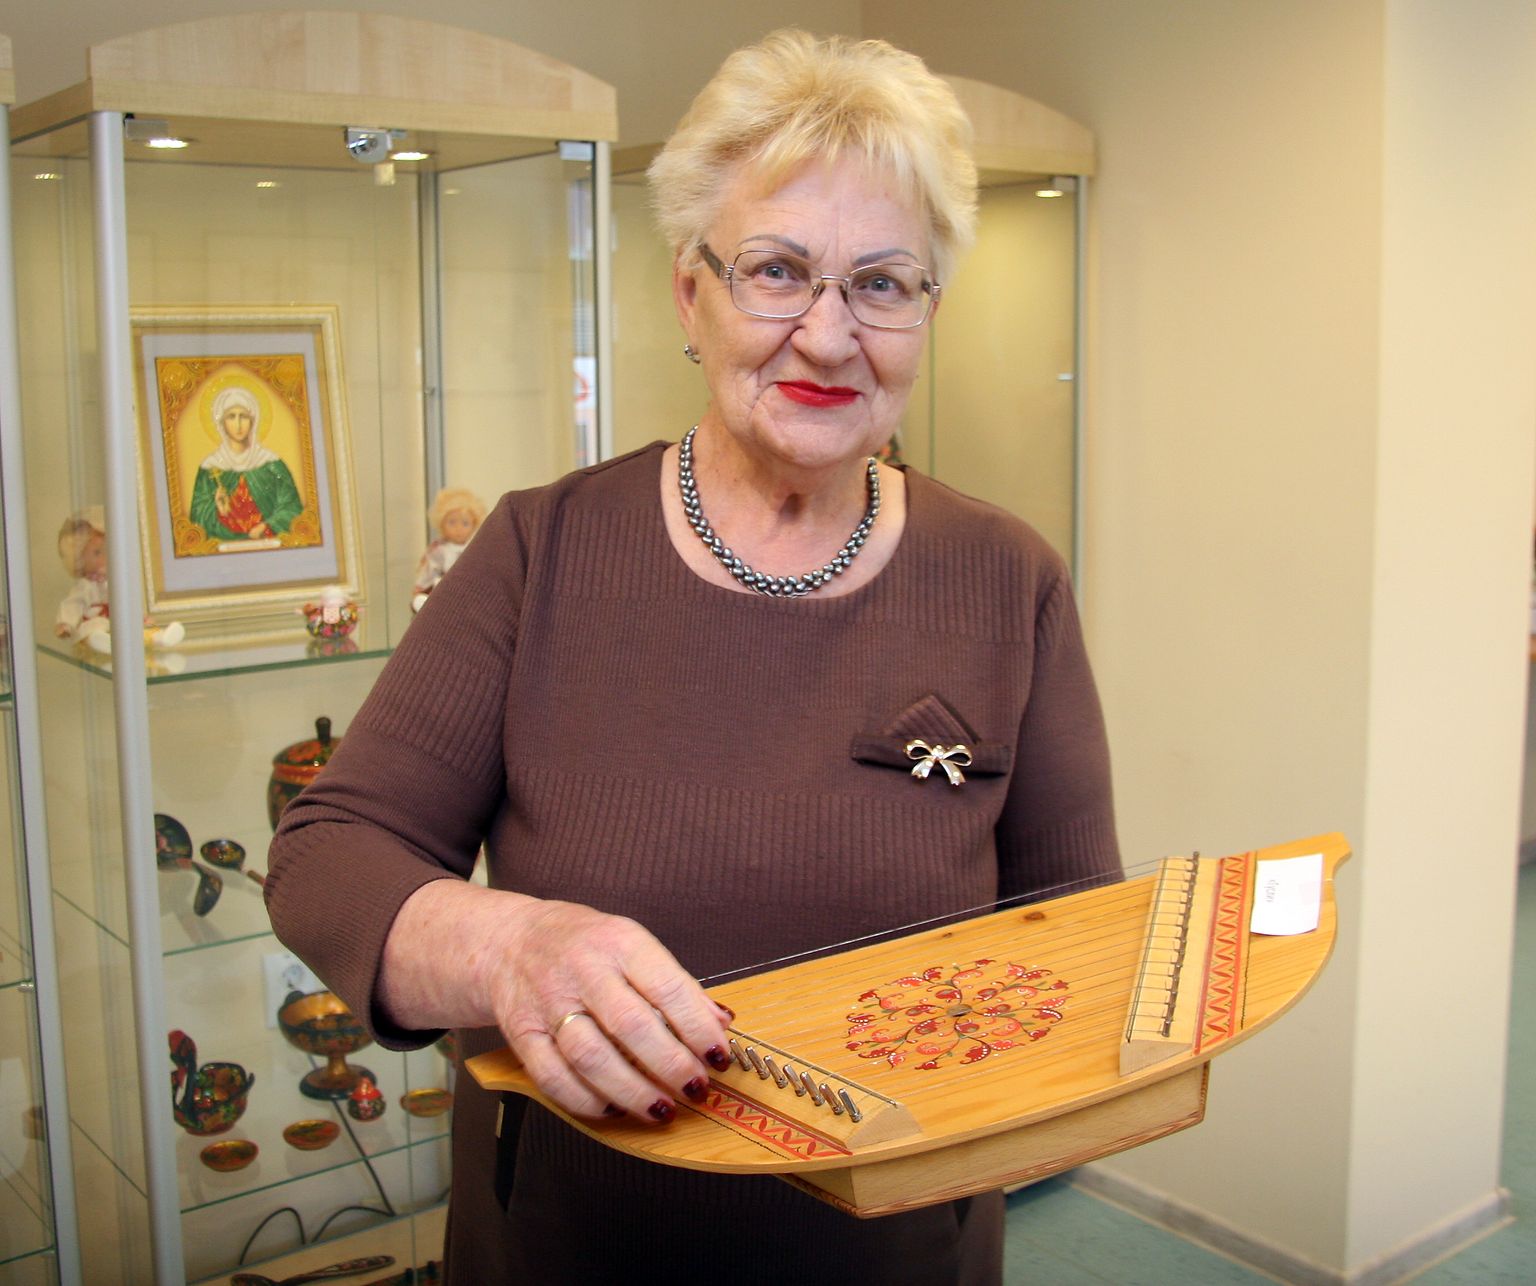 Роза Иванова демонстрирует русский народный инструмент - гусли, они были изготовлены специально в подарок кохтла-ярвескому музею.